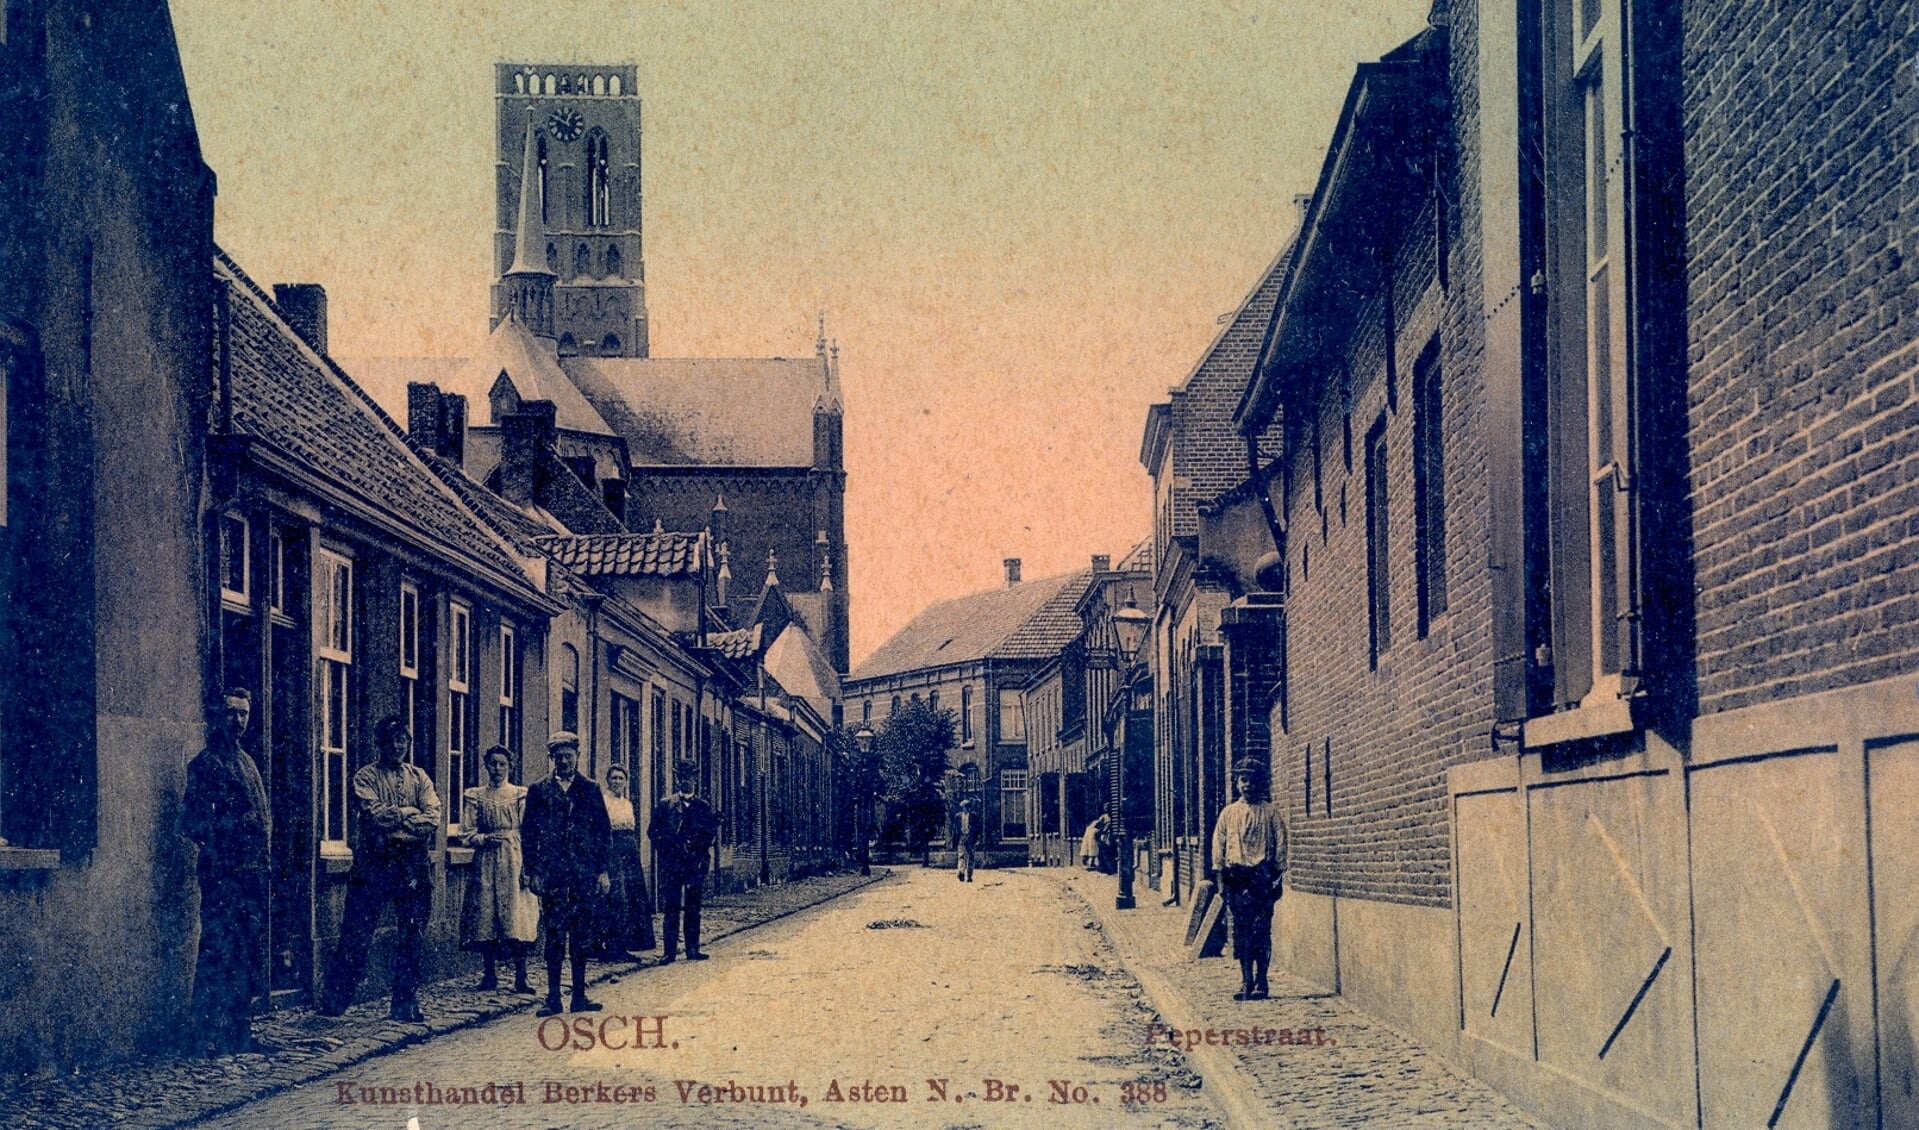 De Peperstraat in Oss, gezien vanaf de Heuvel. 1915. Collectie Stadsarchief Oss.